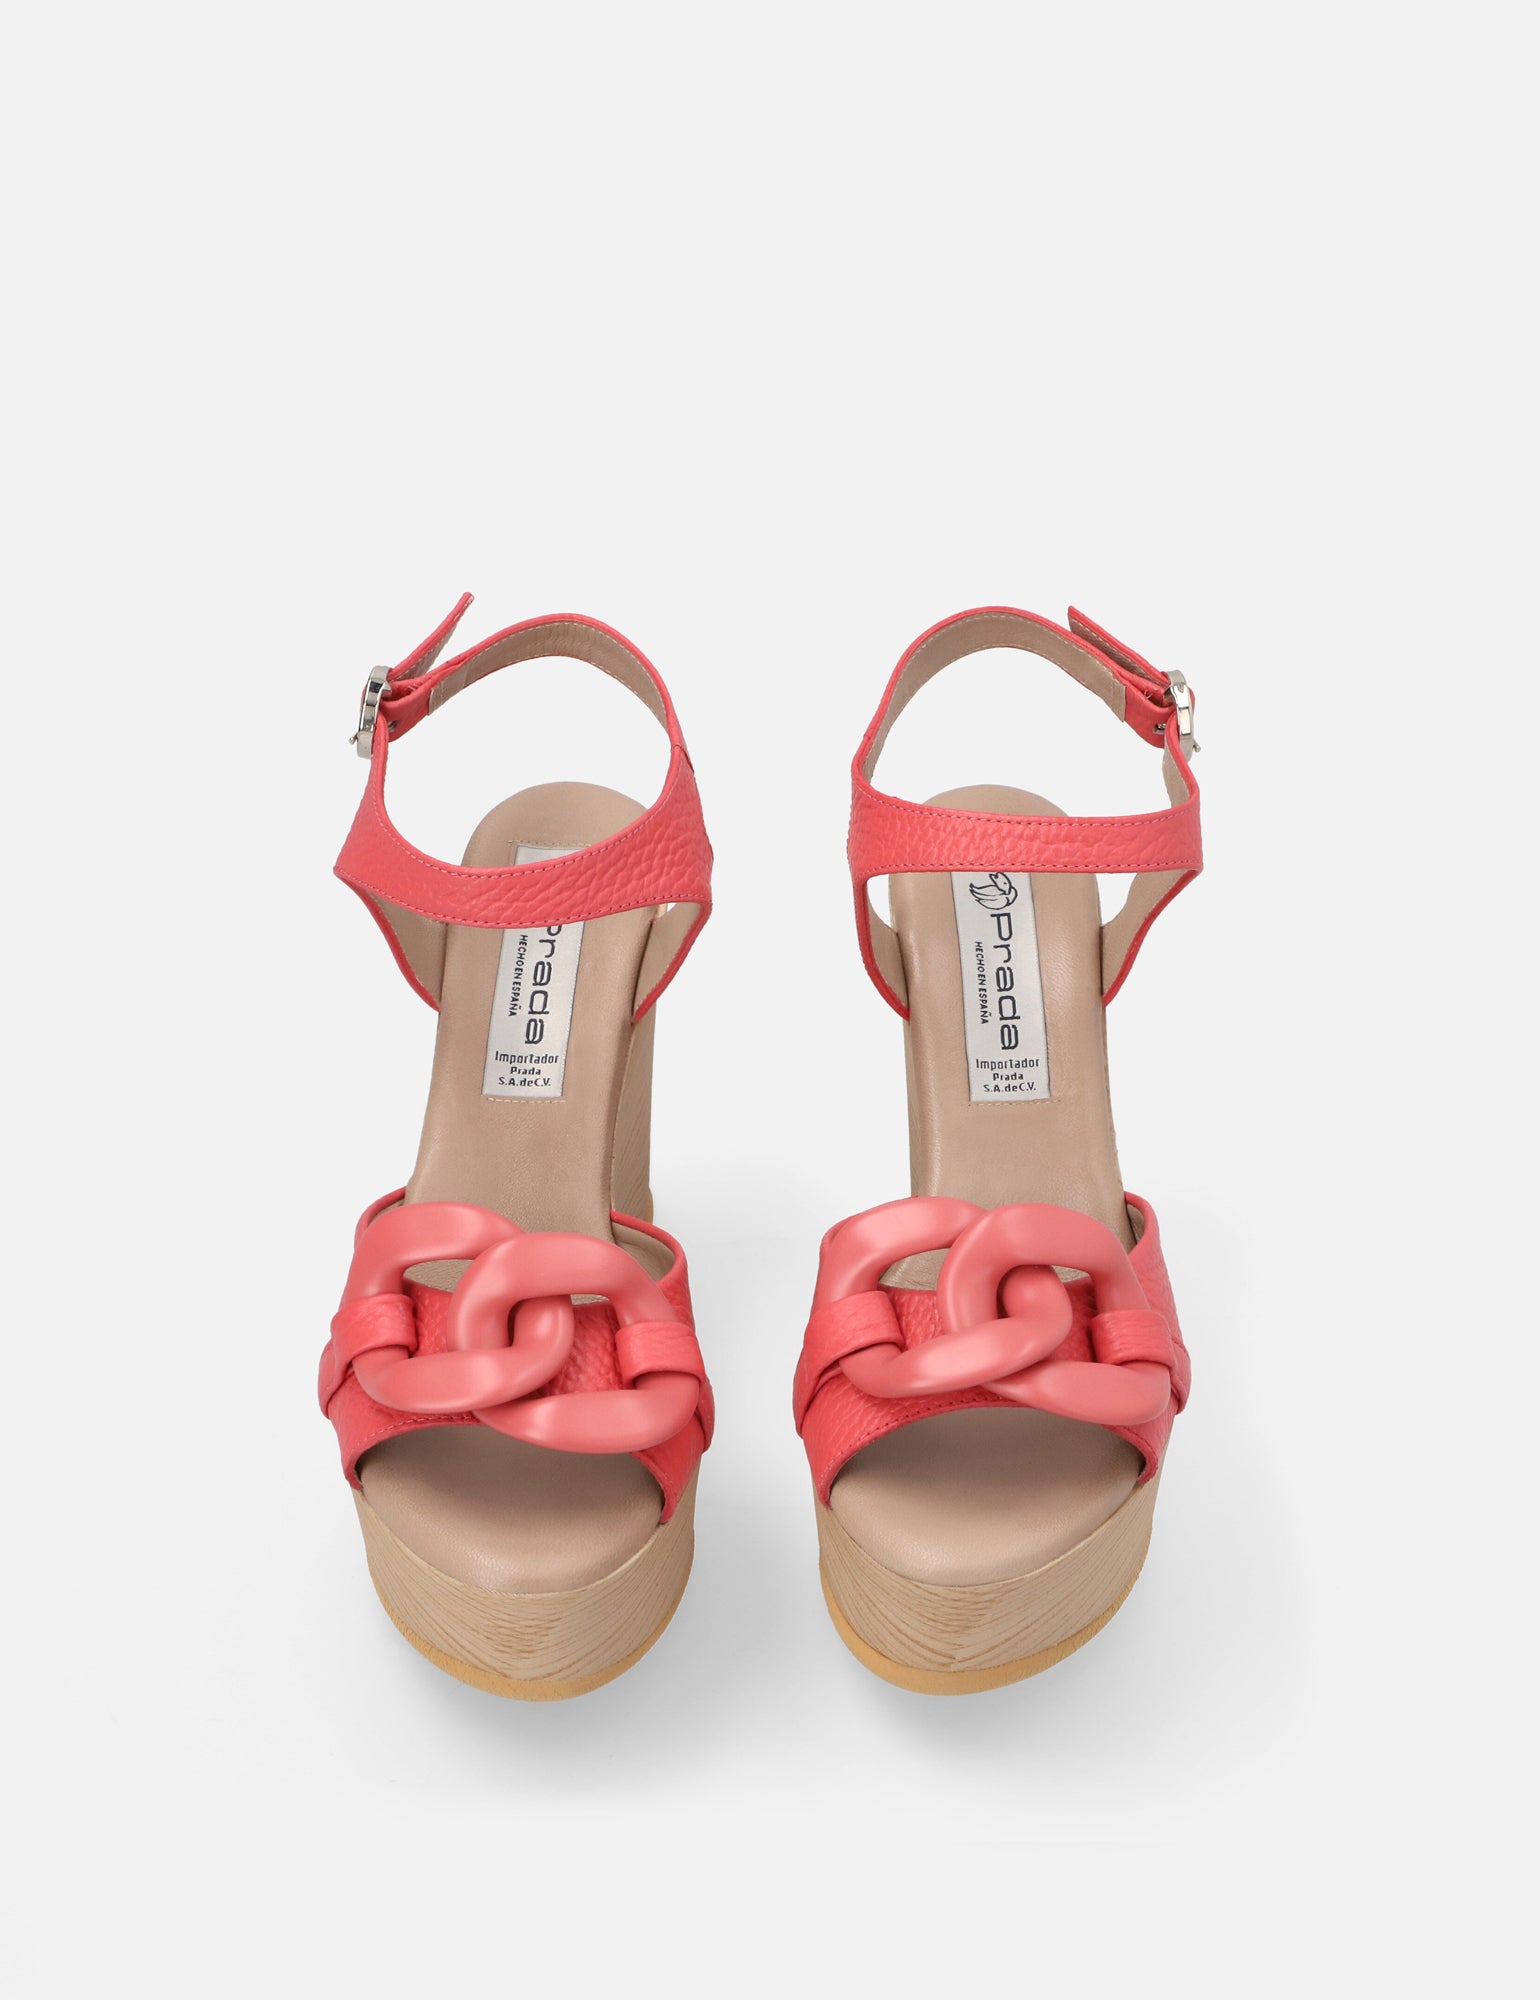 Sandalia de plataforma en piel color coral